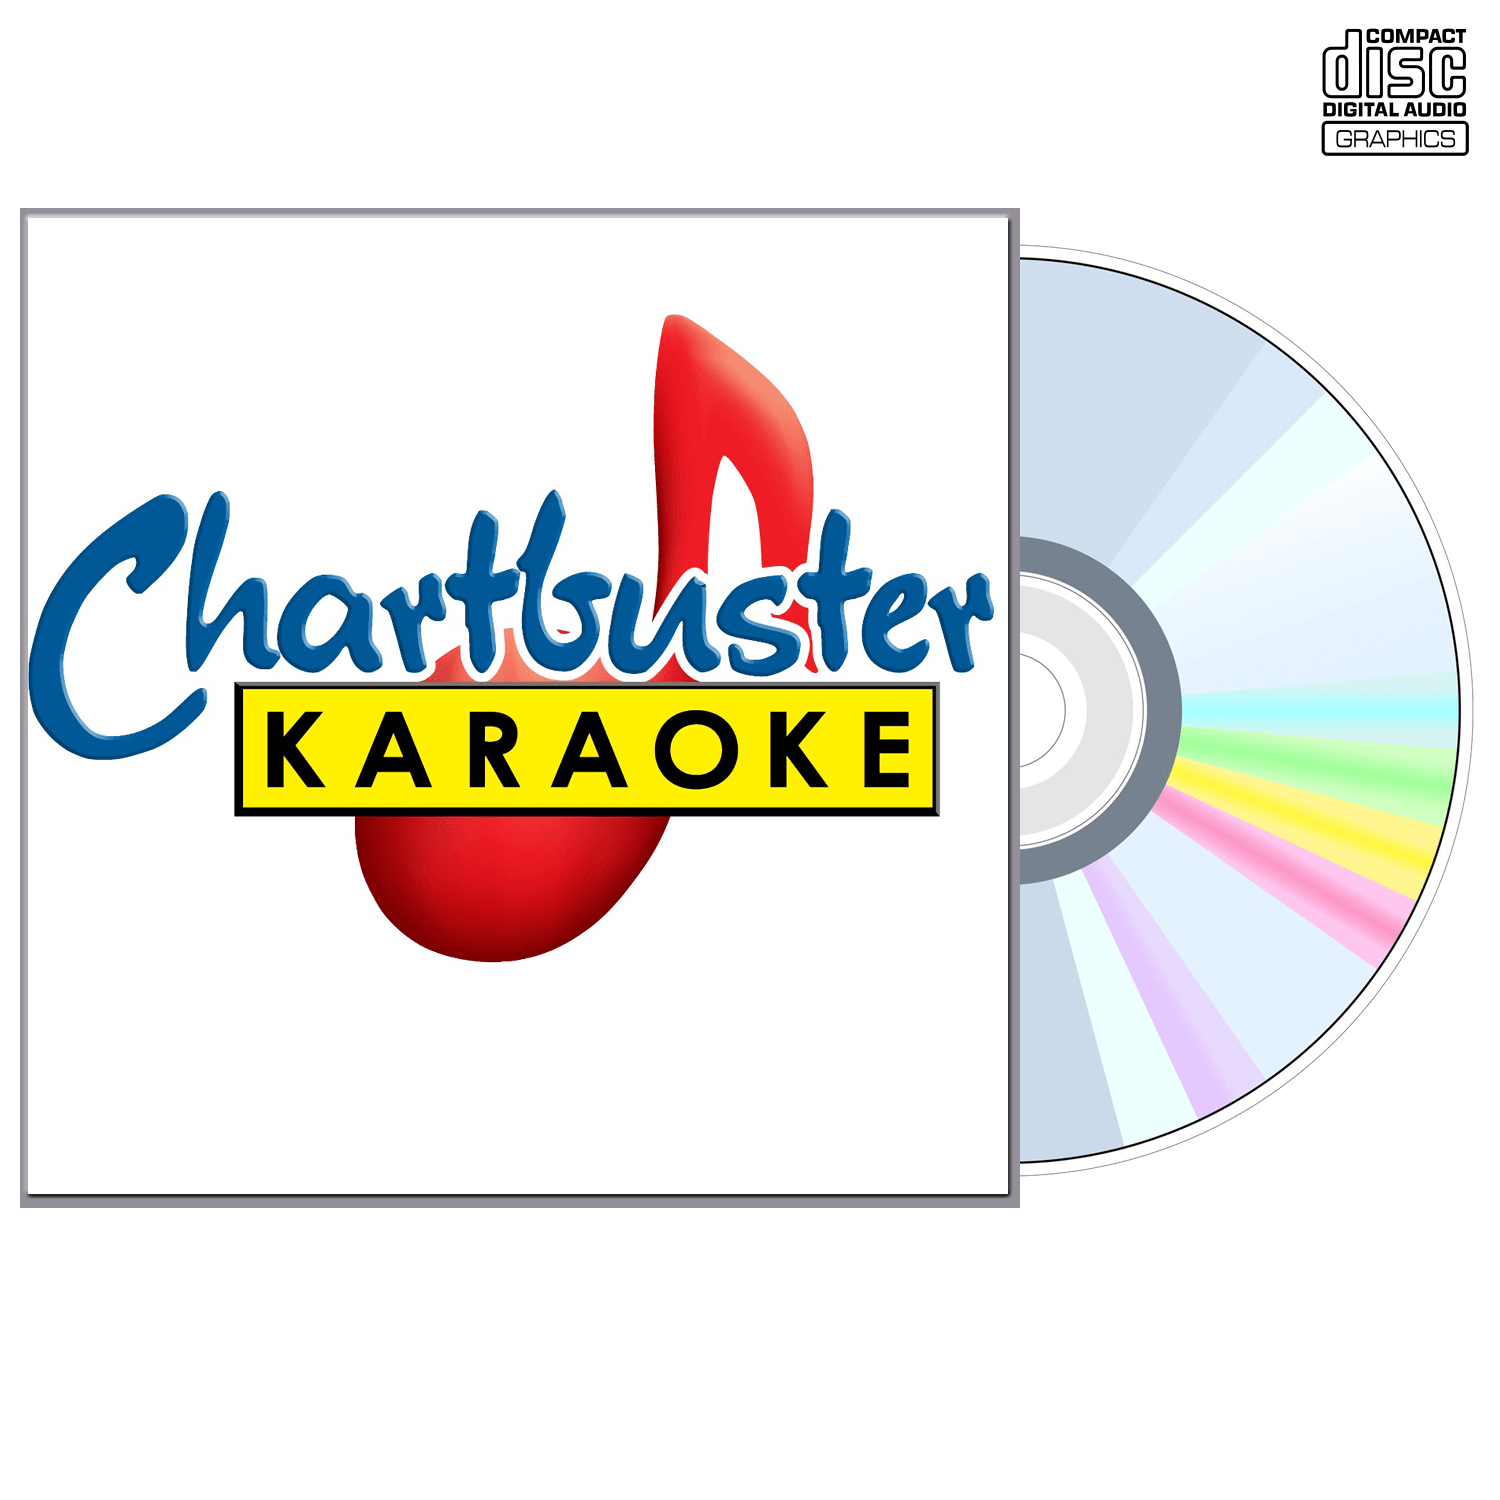 Brenda Lee - CD+G - Chartbuster Karaoke - Karaoke Home Entertainment